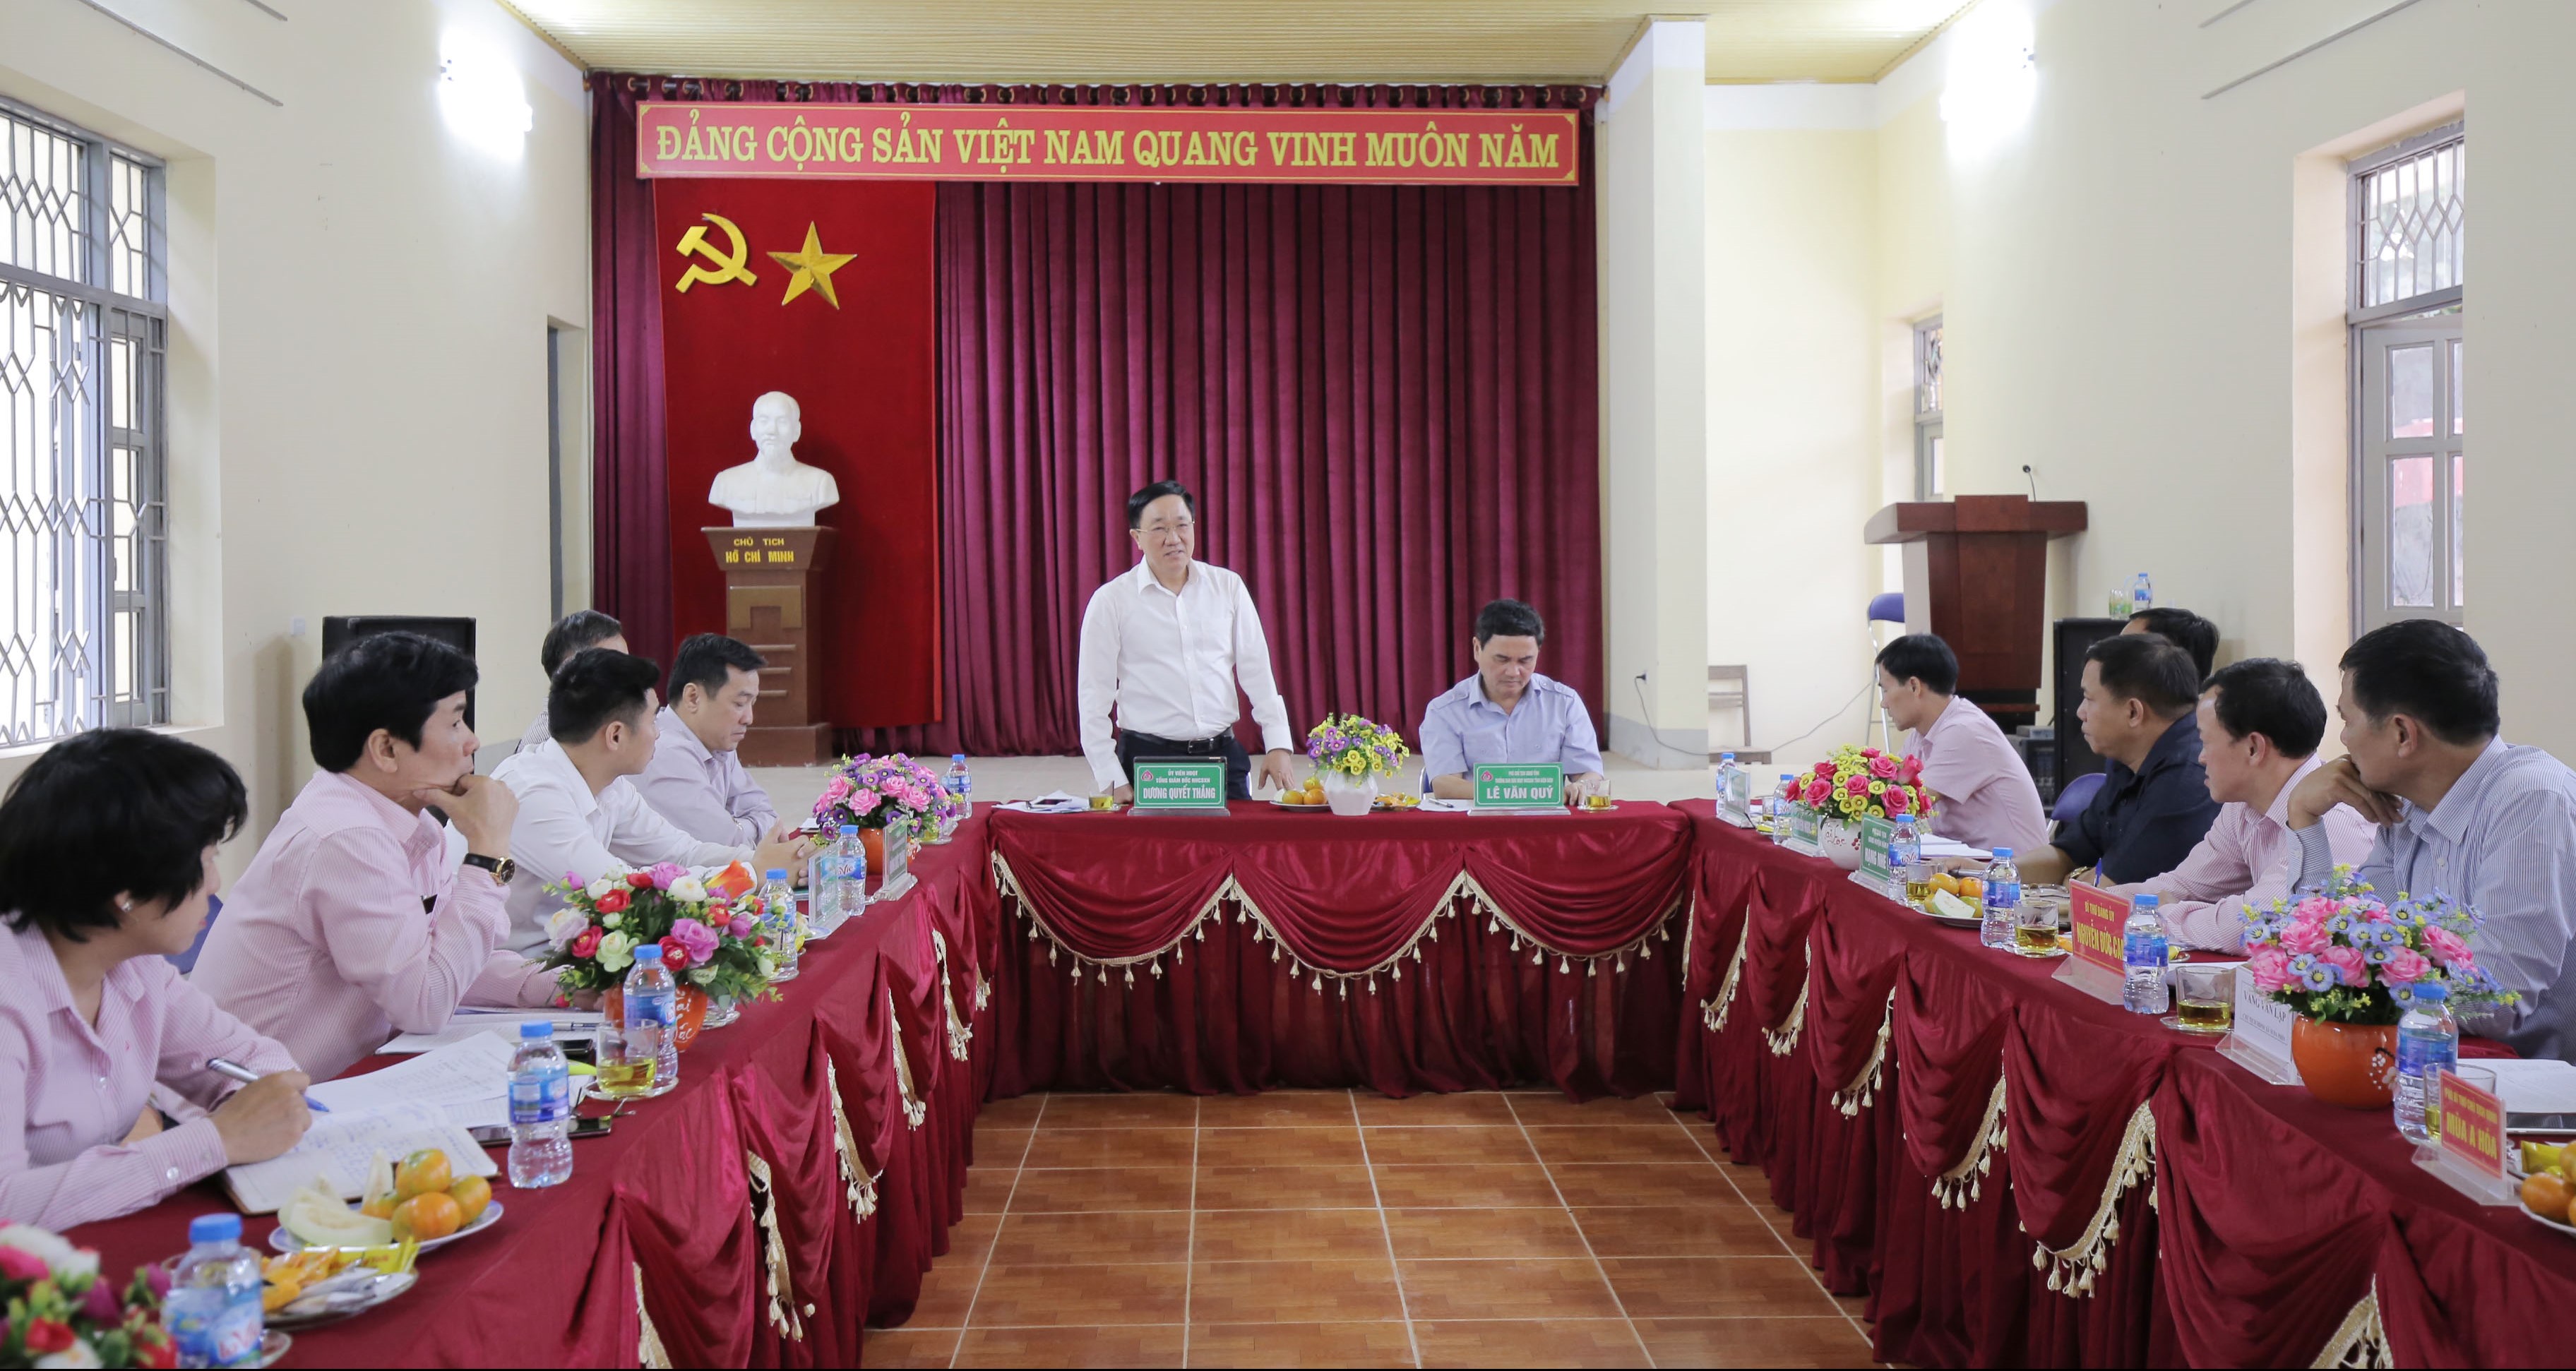 Tổng Giám đốc Dương Quyết Thắng làm việc với cấp ủy, chính quyền huyện Nậm Pồ và cấp ủy, chính quyền, các tổ chức chính trị - xã hội xã Si Pa Phìn